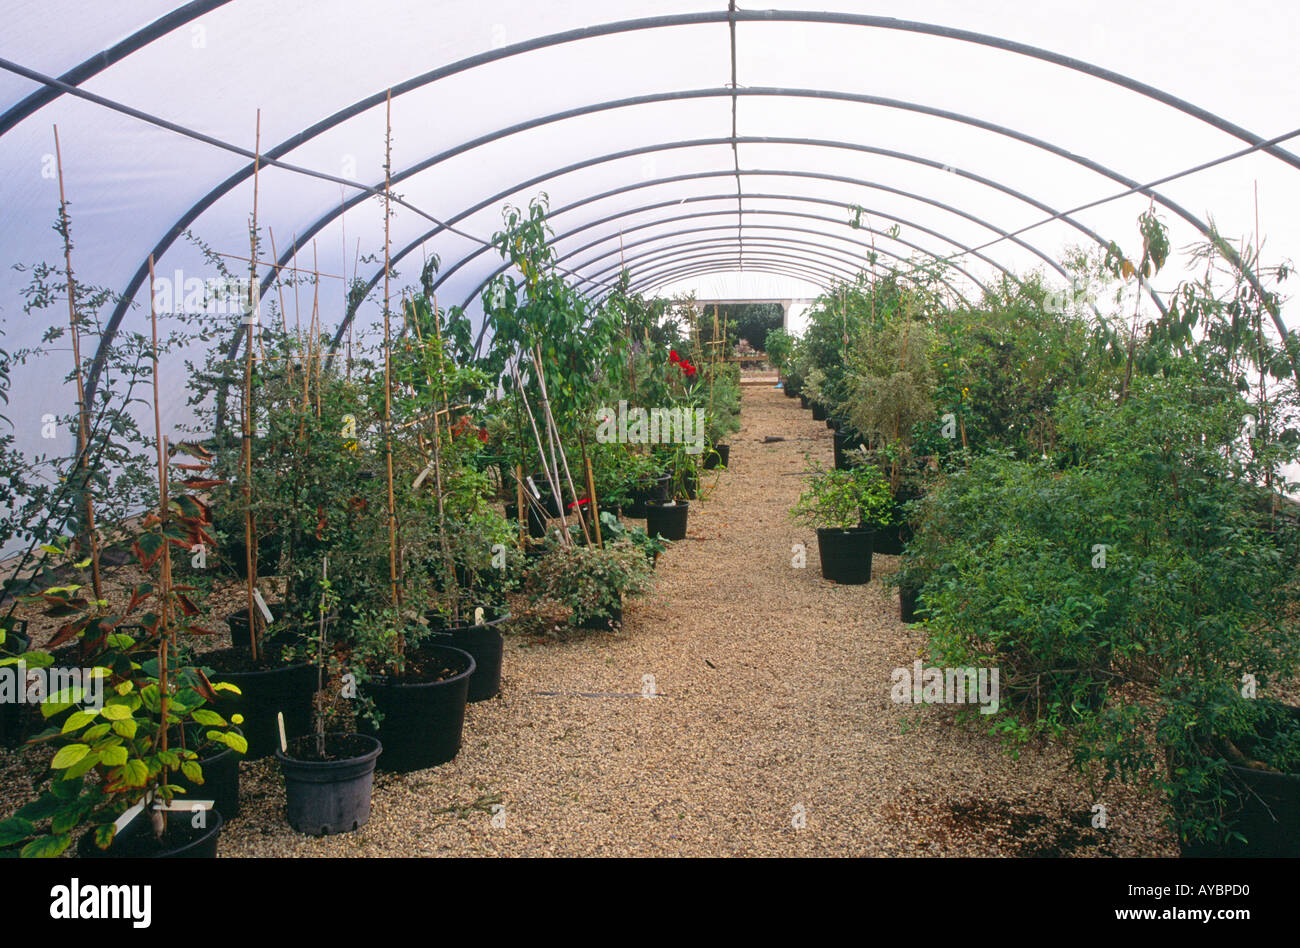 Las plantas dentro de una poli-túnel en un centro de jardinería vivero Foto de stock